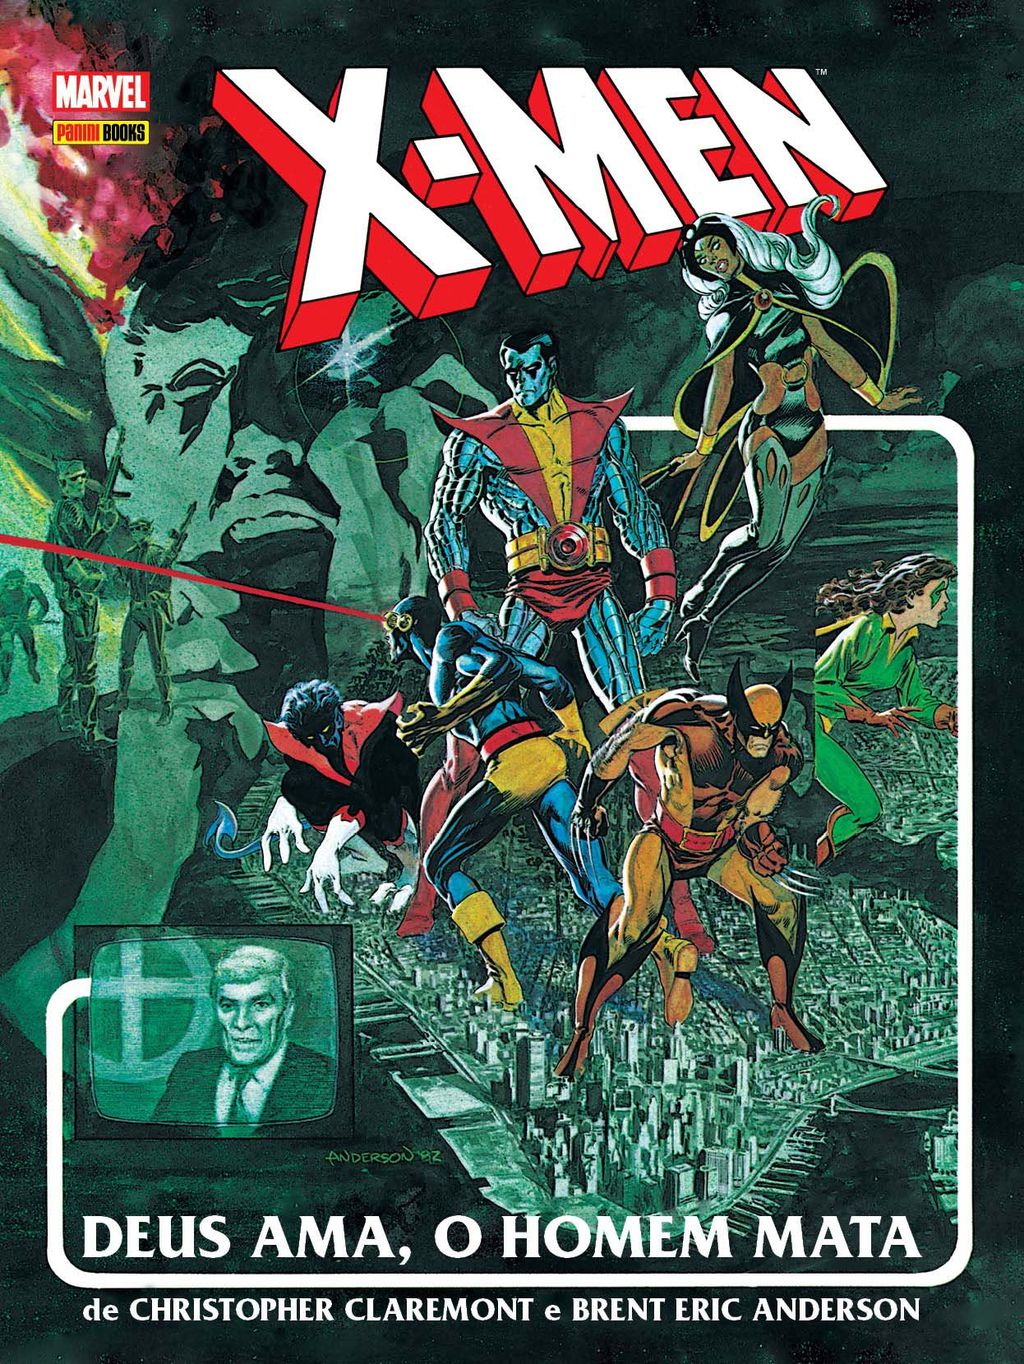 Capa da edição Deus Ama, O Homem Mata, que aborda o preconceito e a intolerância contra os mutantes